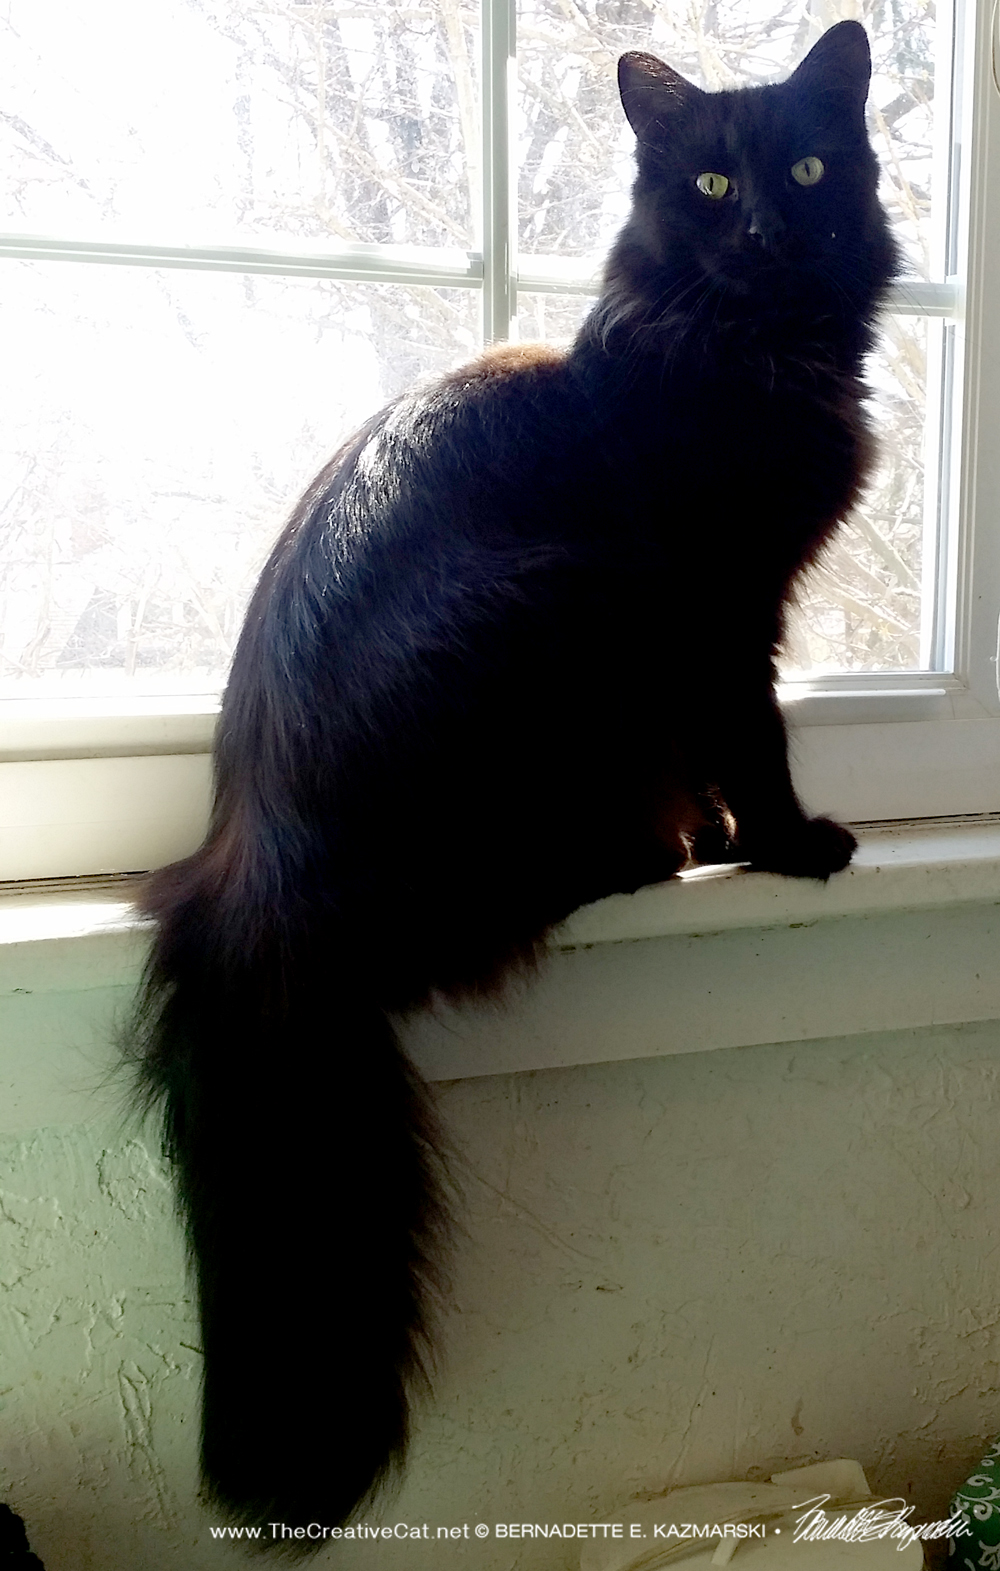 Hamlet enjoys a sunbath on the bathroom windowsill.